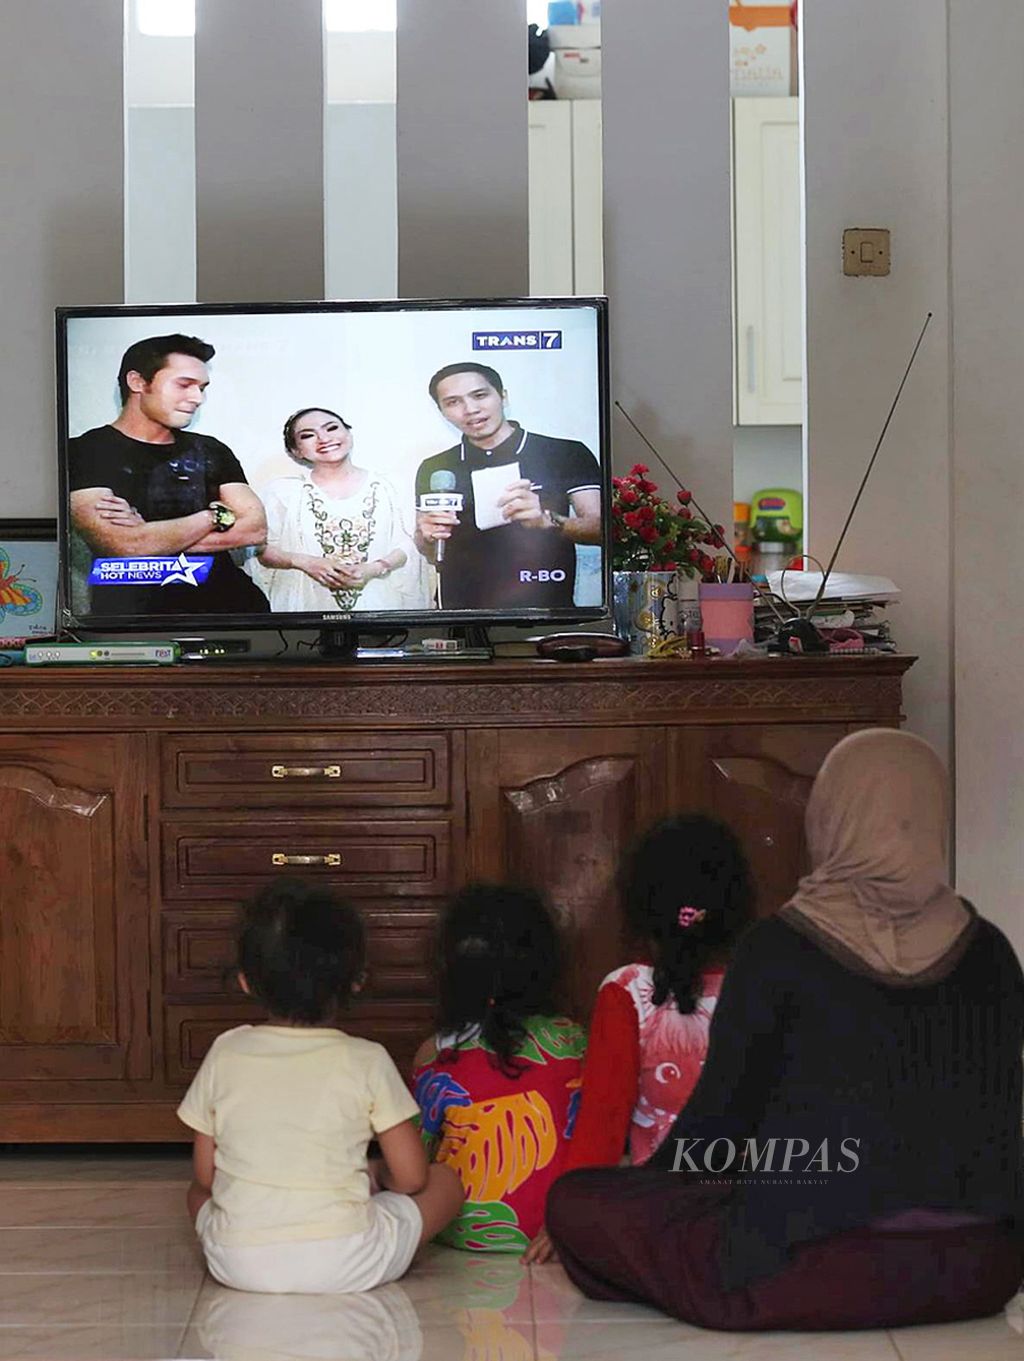 Warga menonton tayangan televisi di rumahnya di Pondok Karya, Tangerang Selatan.